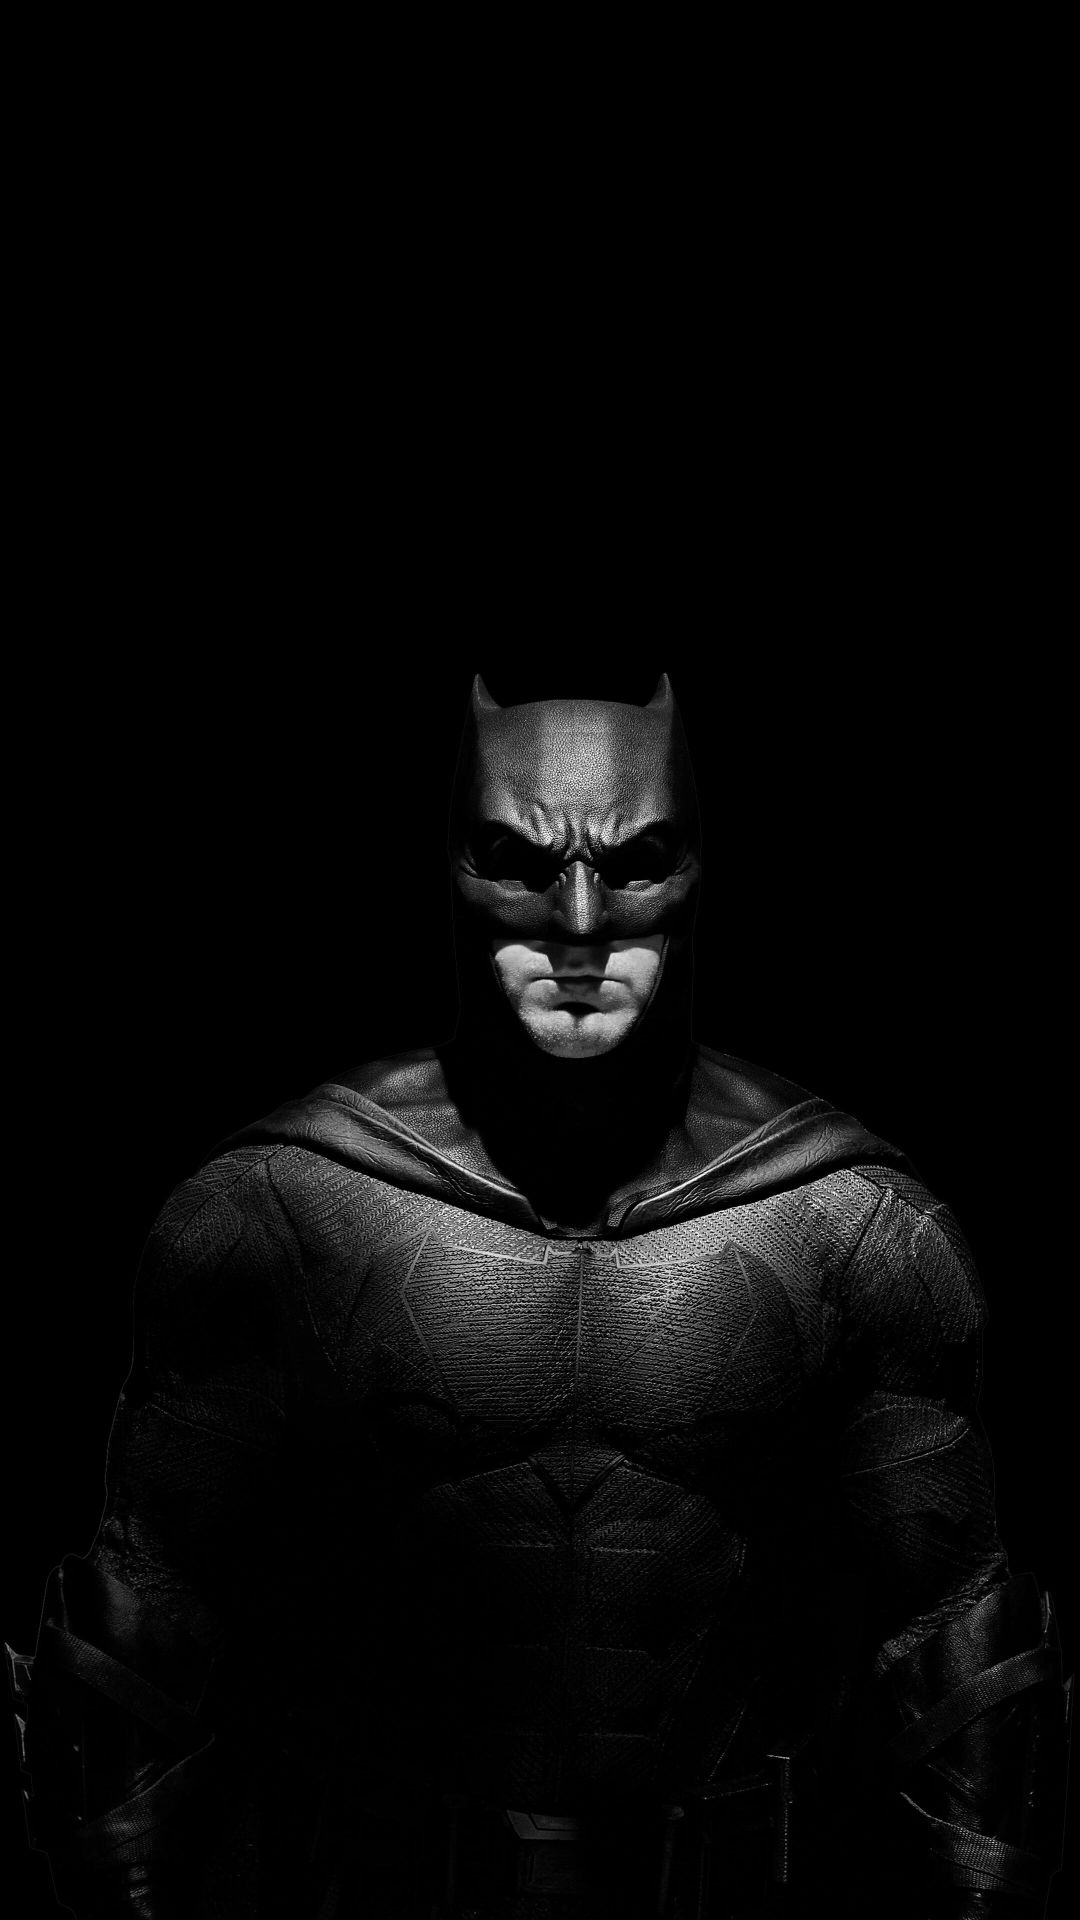 1080x1920 Batman Wallpapers Top 30 Best Batman Wallpapers Download